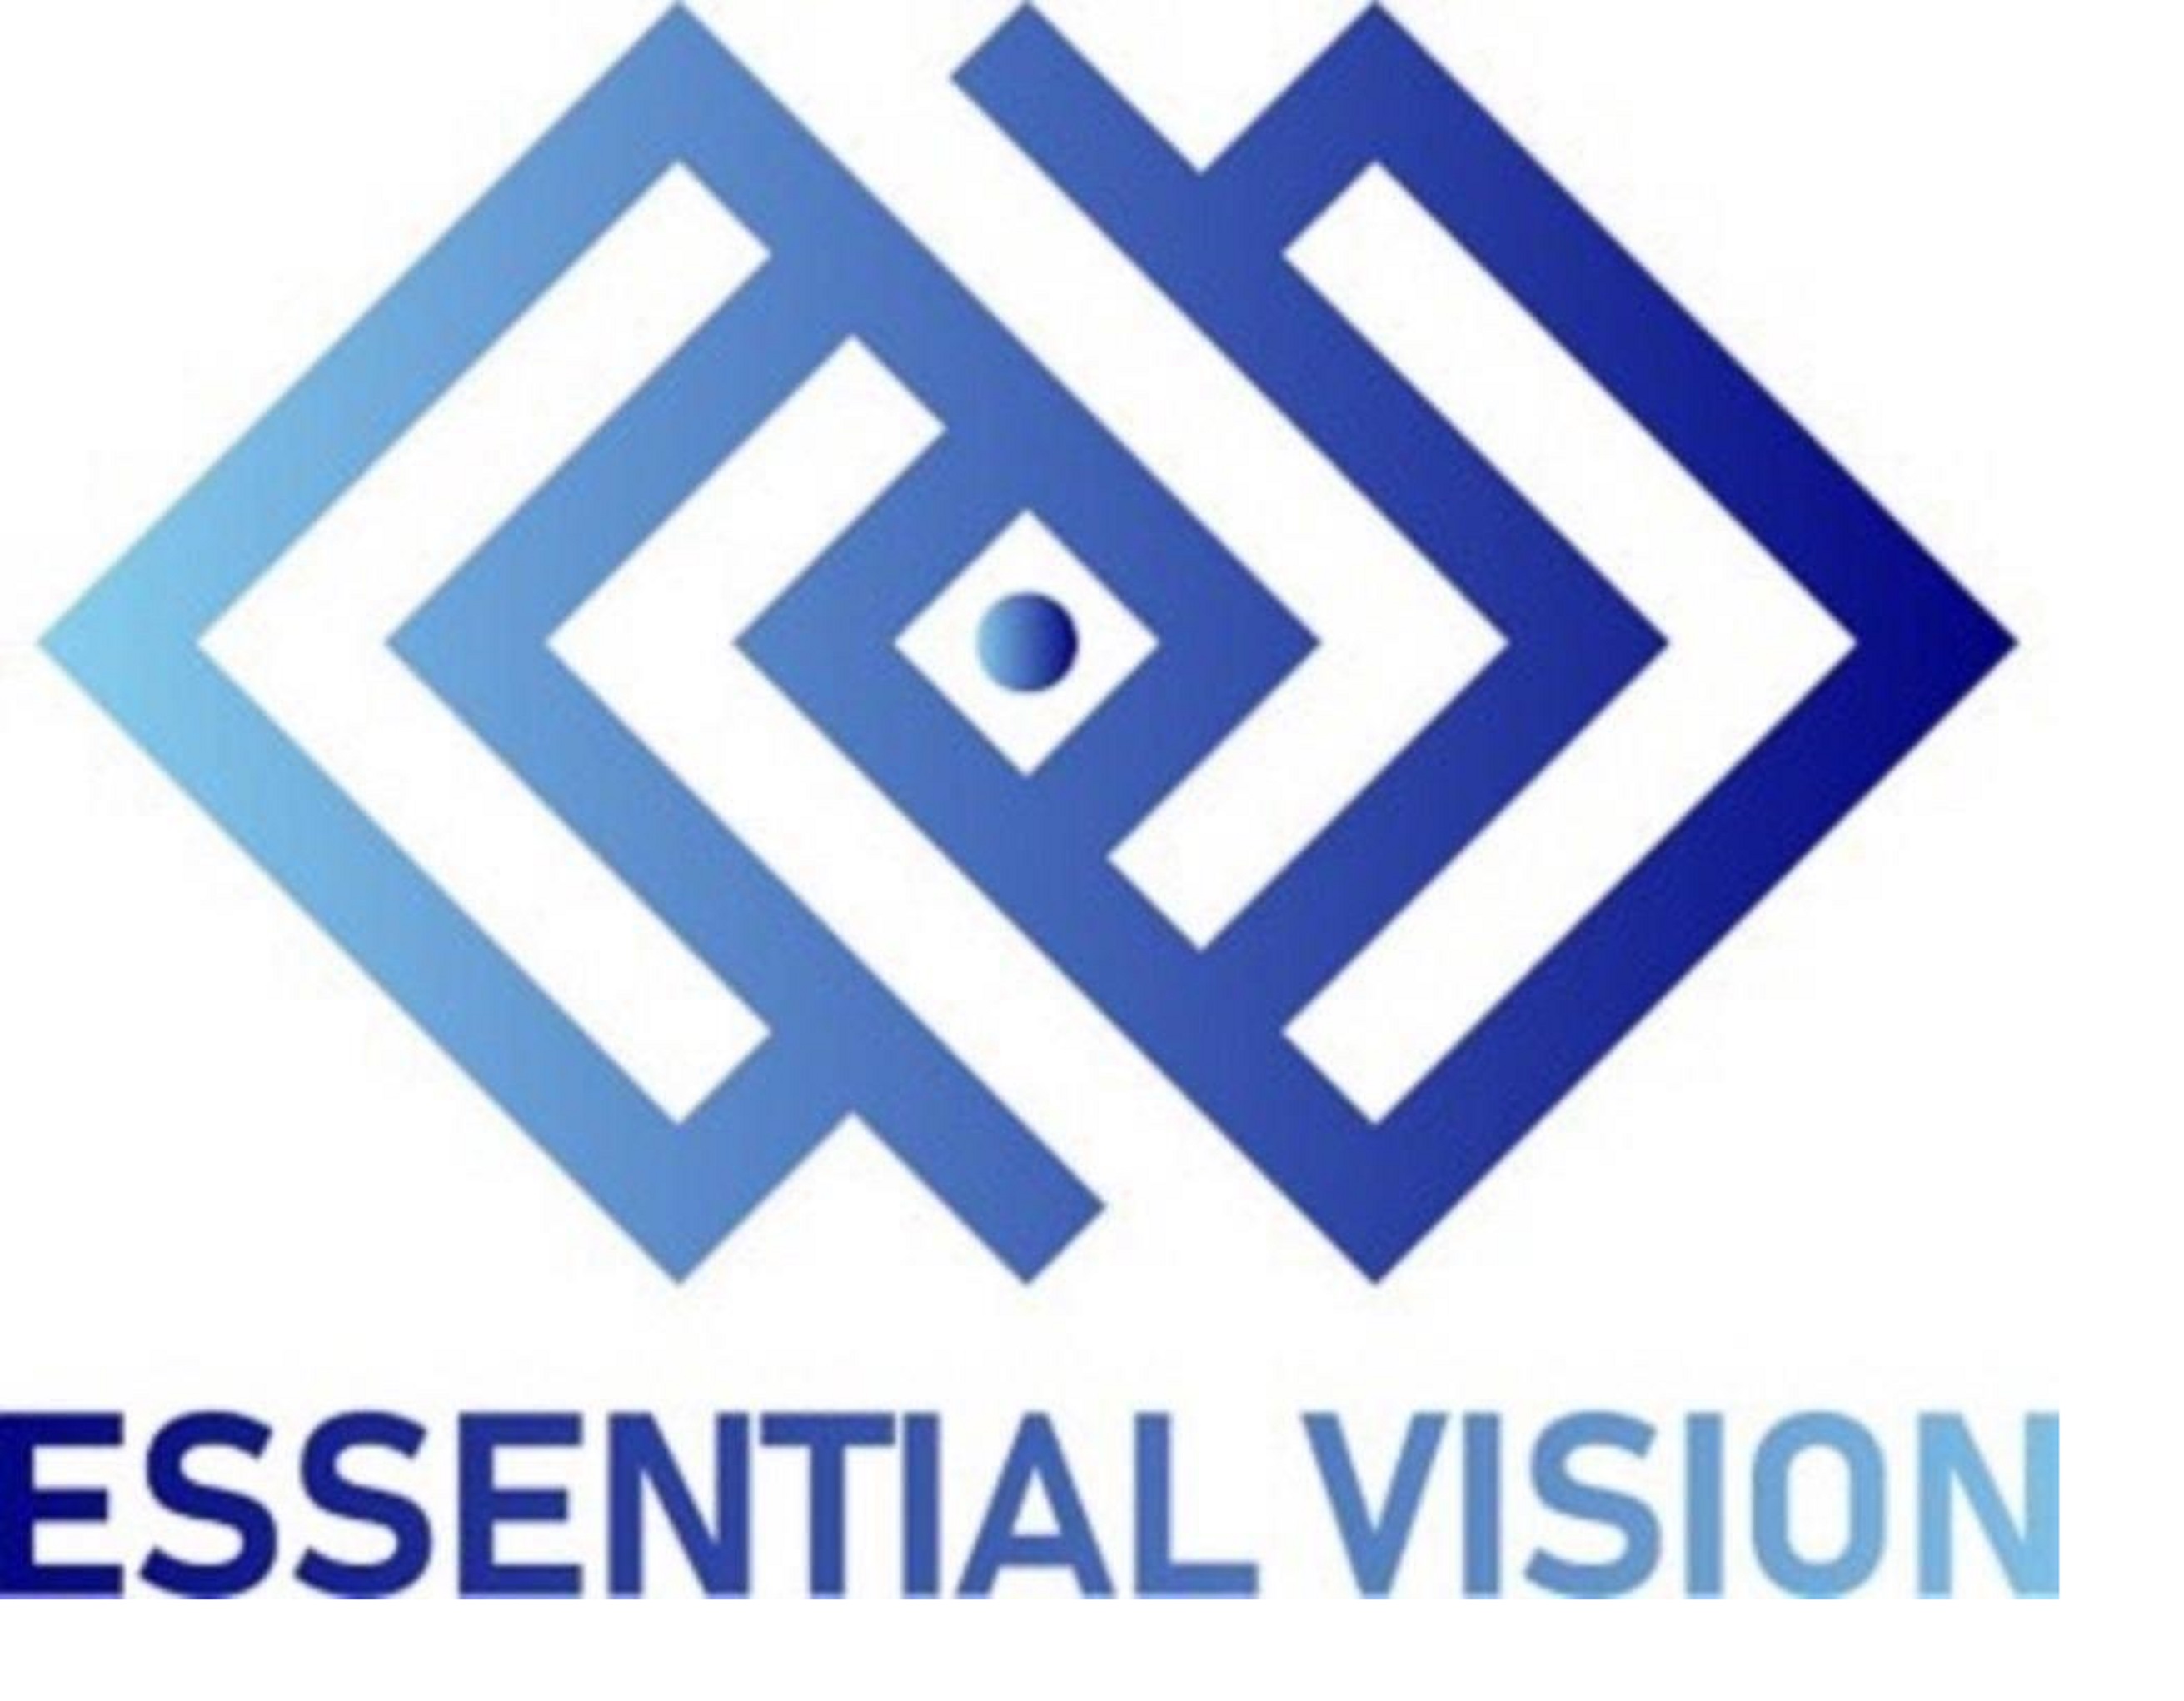 Essential Vision